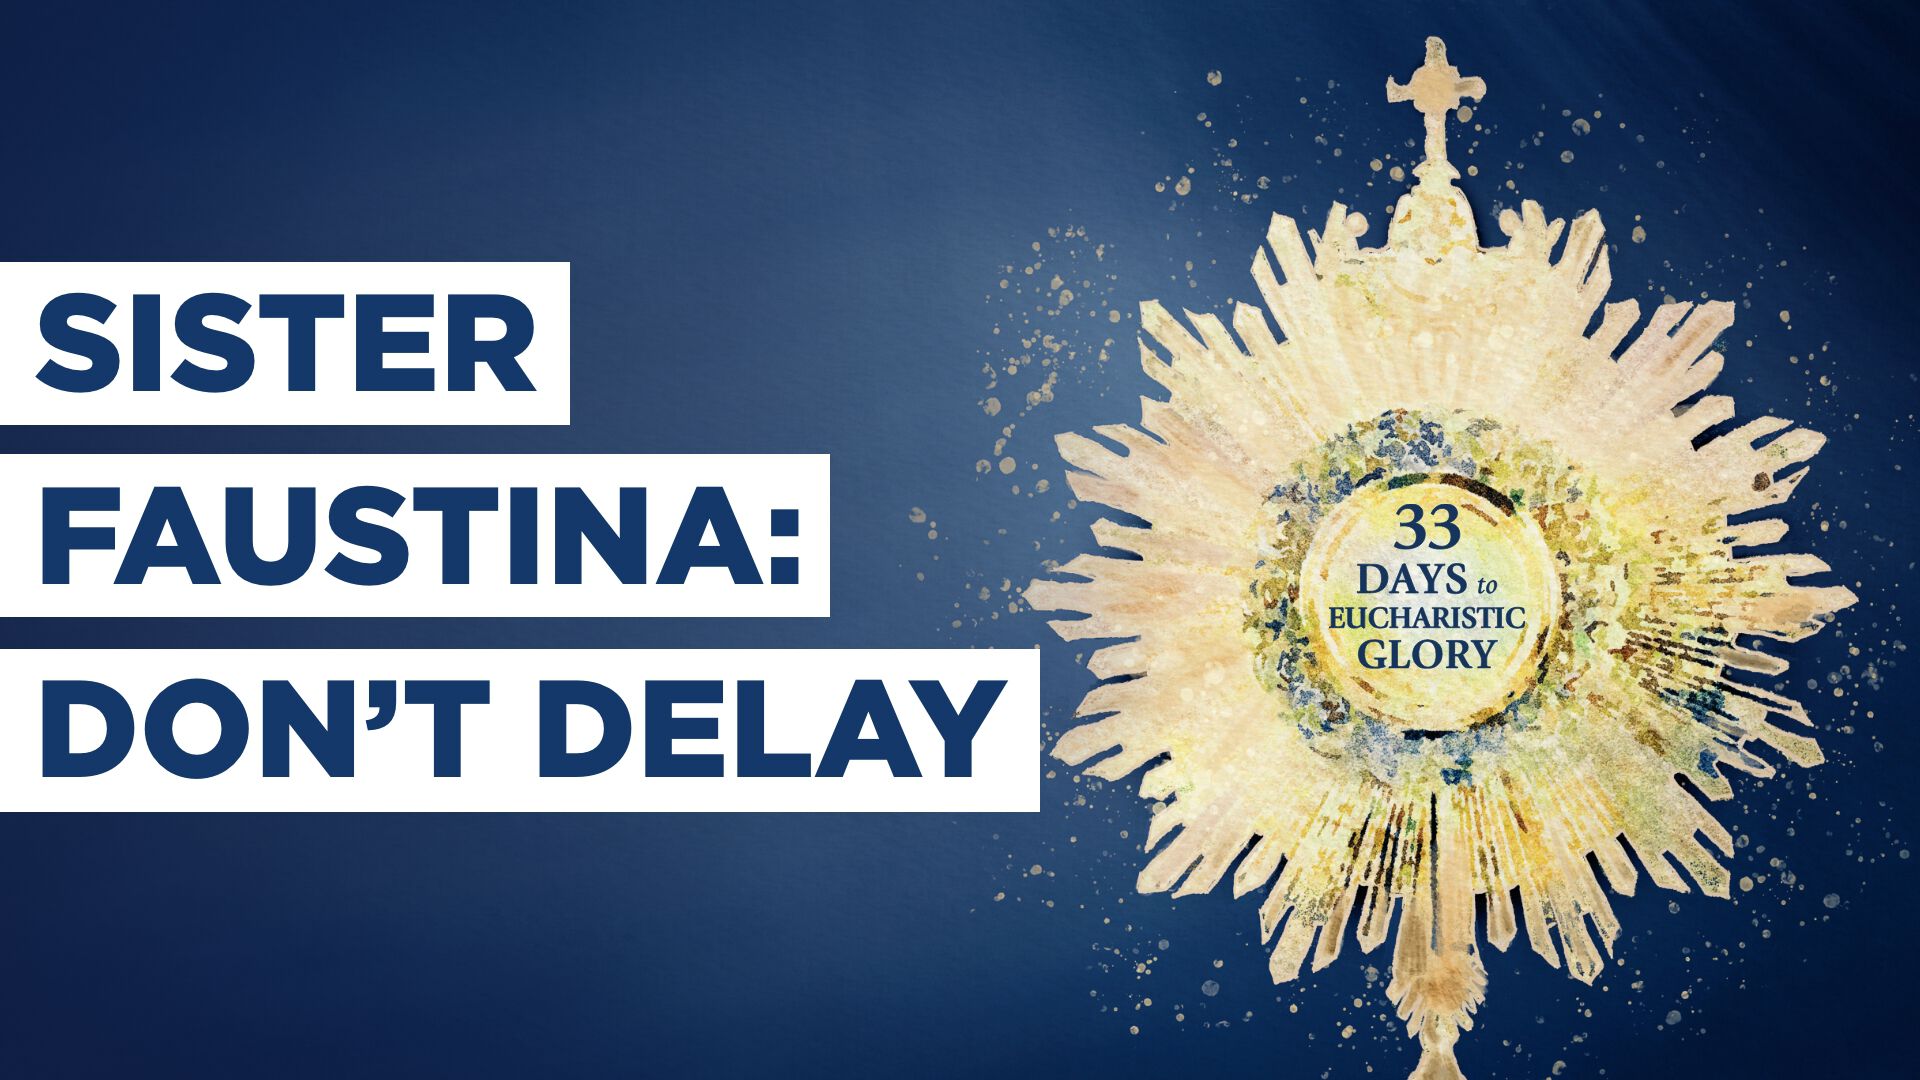 Sister Faustina: Don't Delay